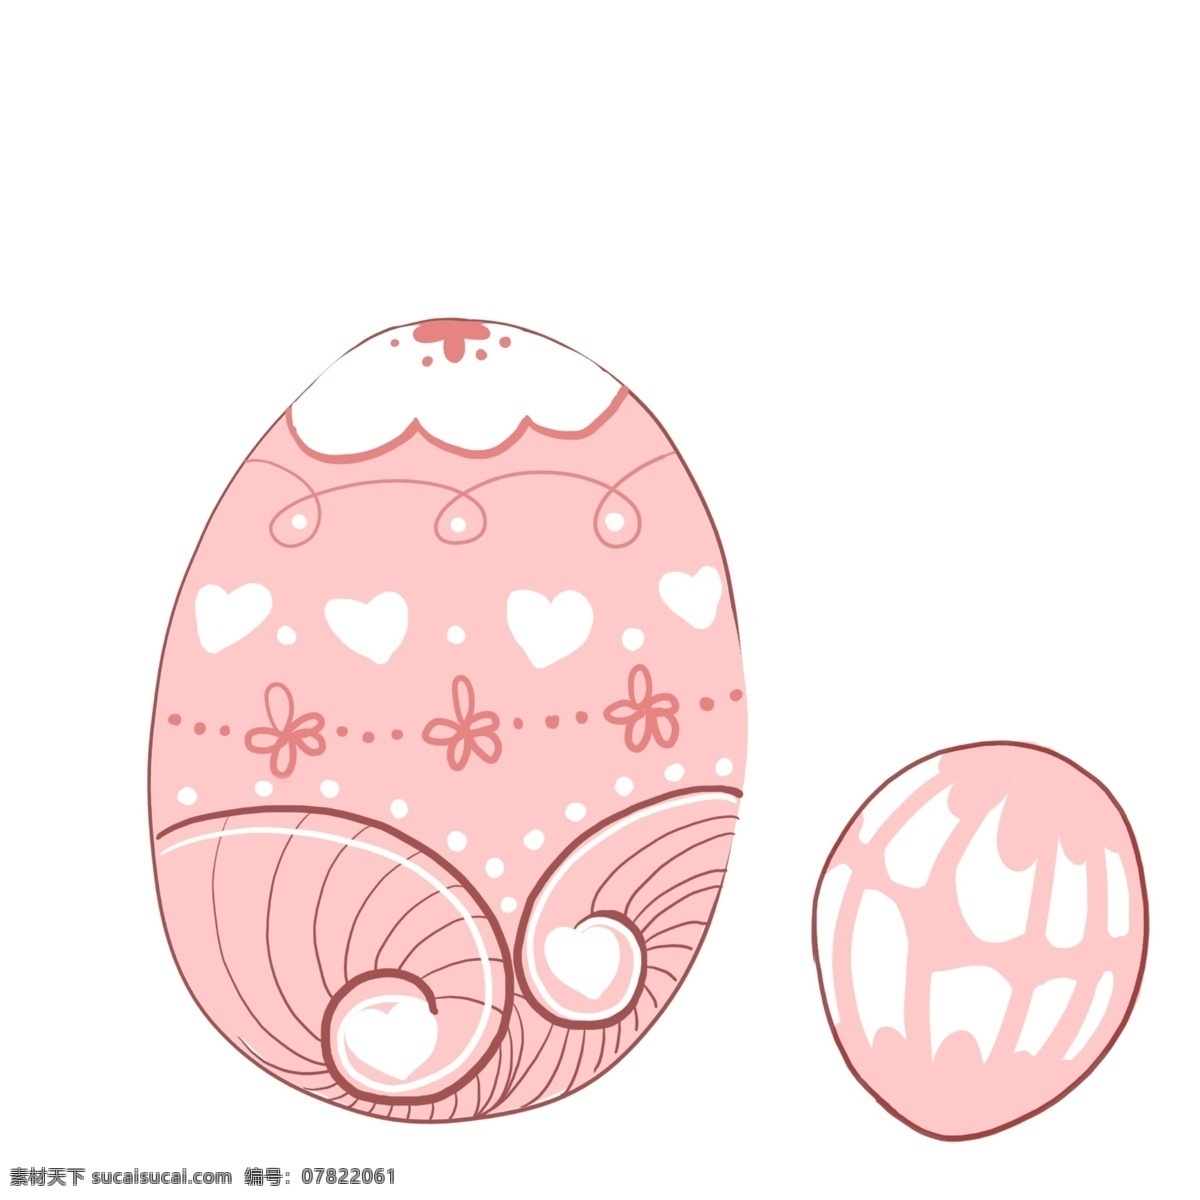 心形 复活节 彩蛋 插图 粉色彩蛋 心形彩蛋 复活节彩蛋 大小 不一 花纹彩蛋 精美的彩蛋 卡通彩蛋